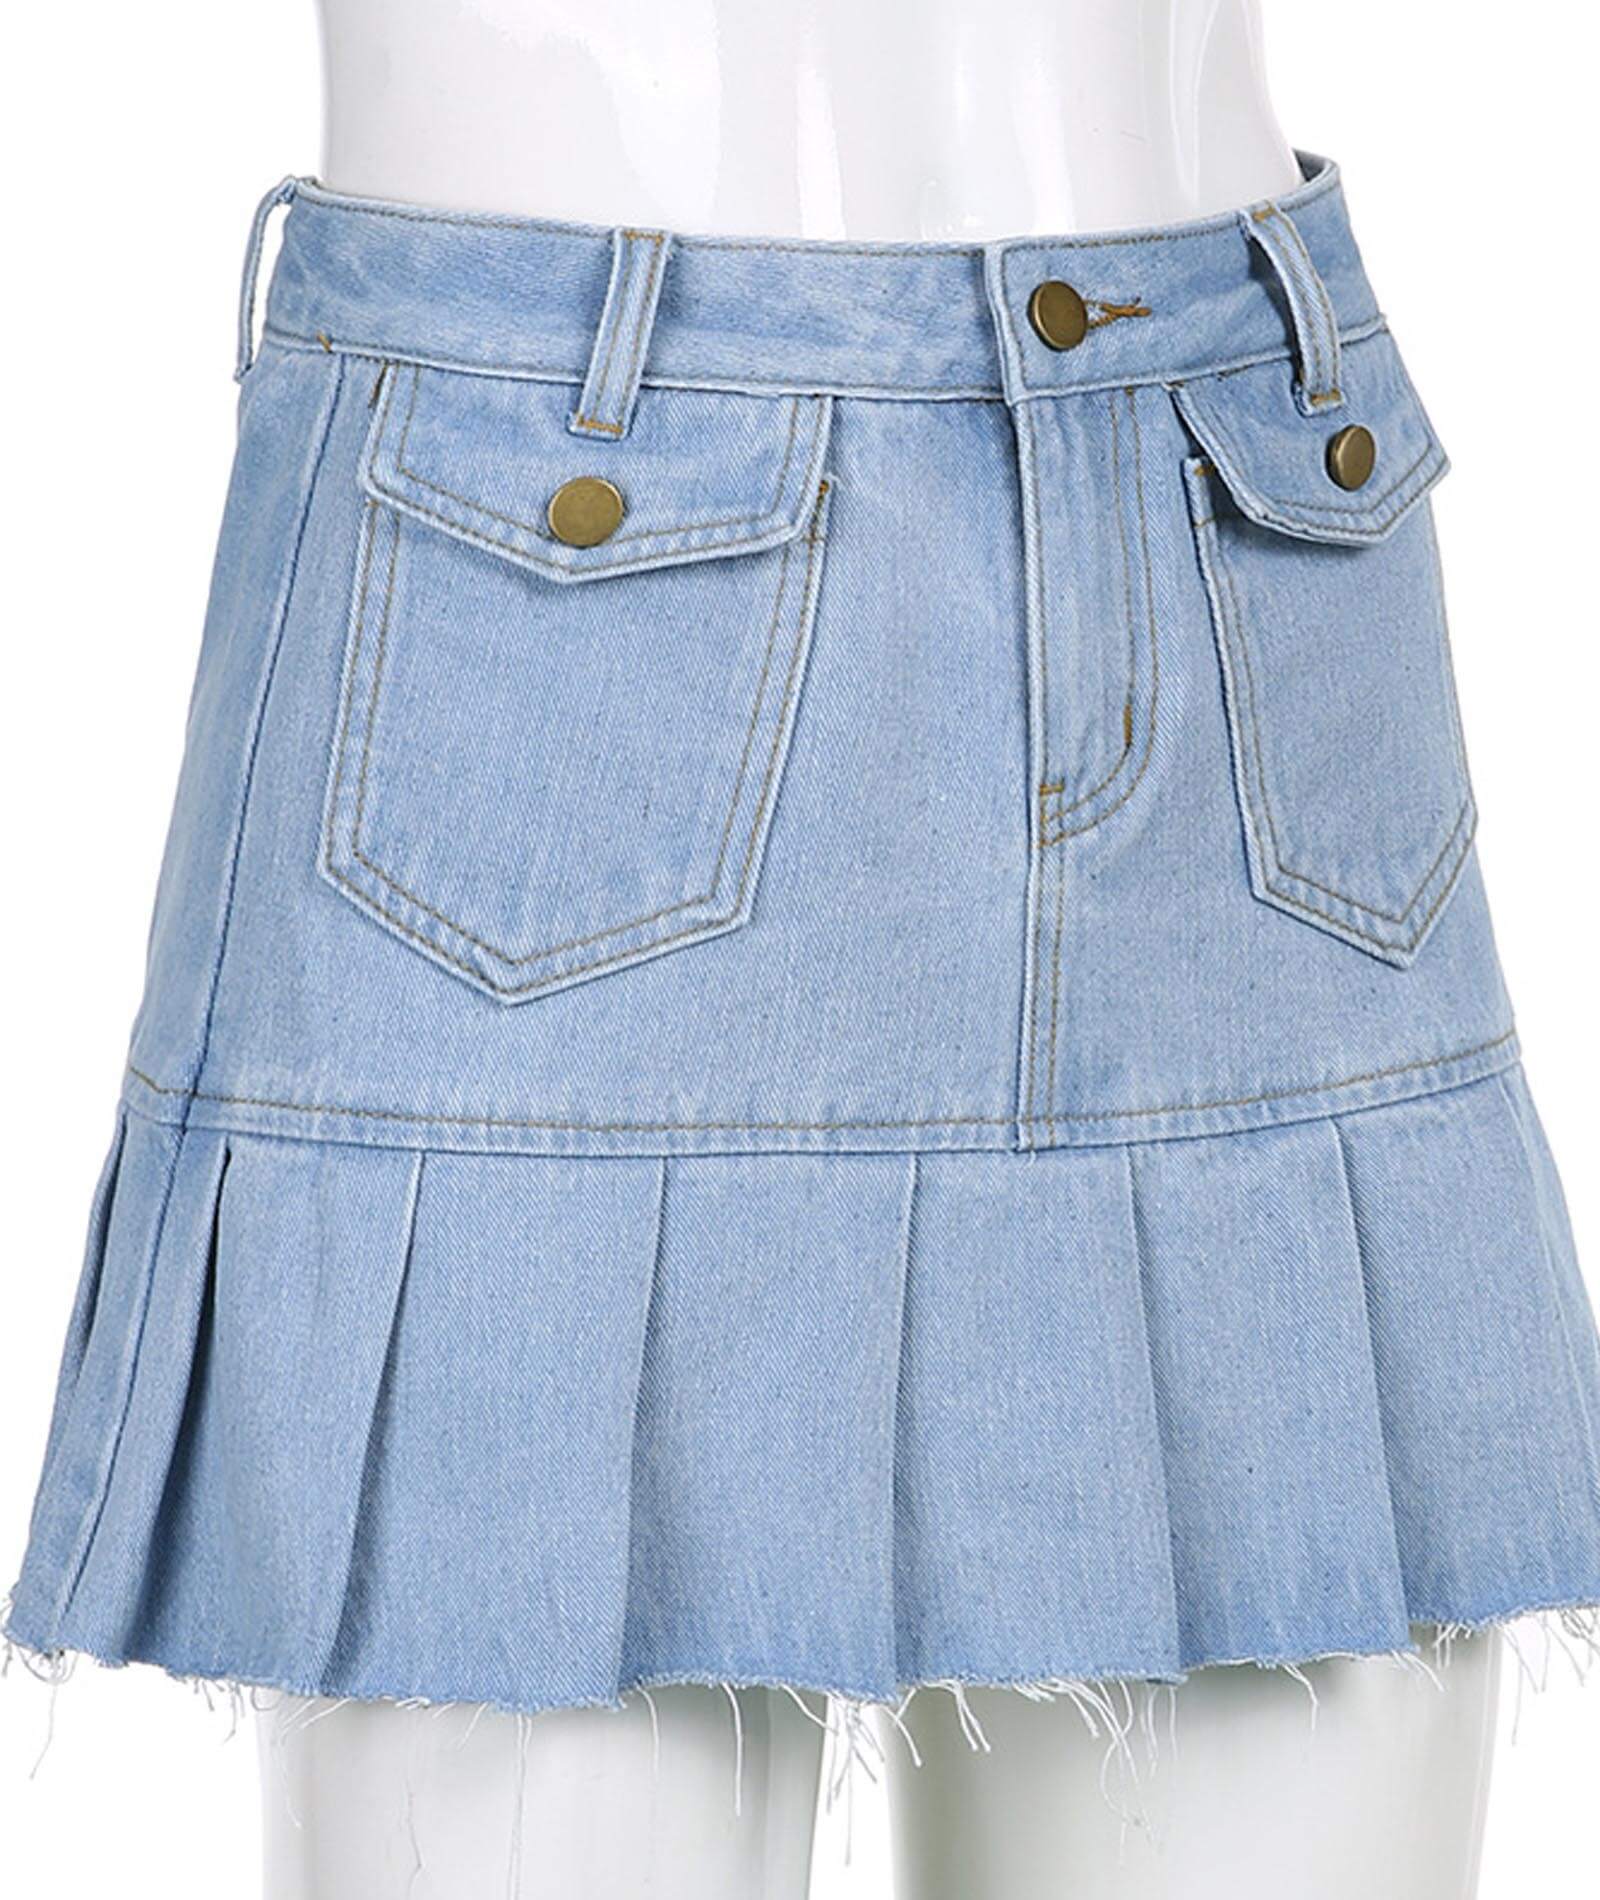  Women's Regular Fit Denim Jeans Shorts High Rise Girls Flare Pleated Dress Denim Mini Skirt